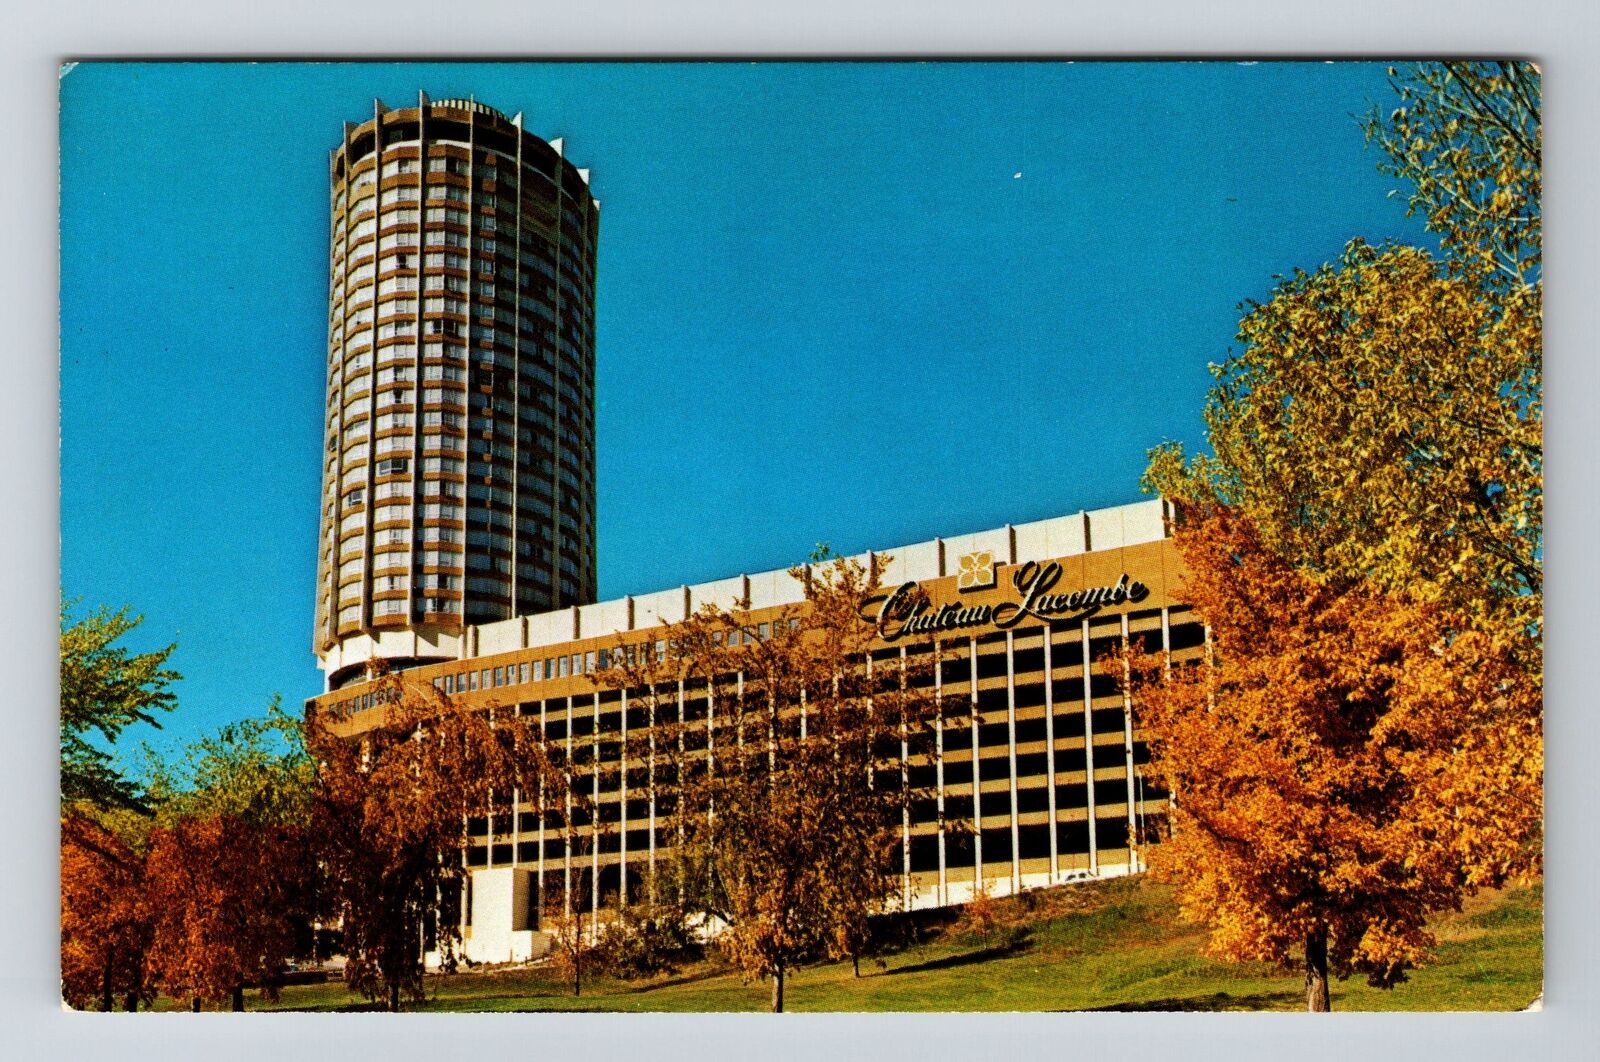 Edmonton-Alberta, Chateau Lacombe, Advertising, Vintage Postcard